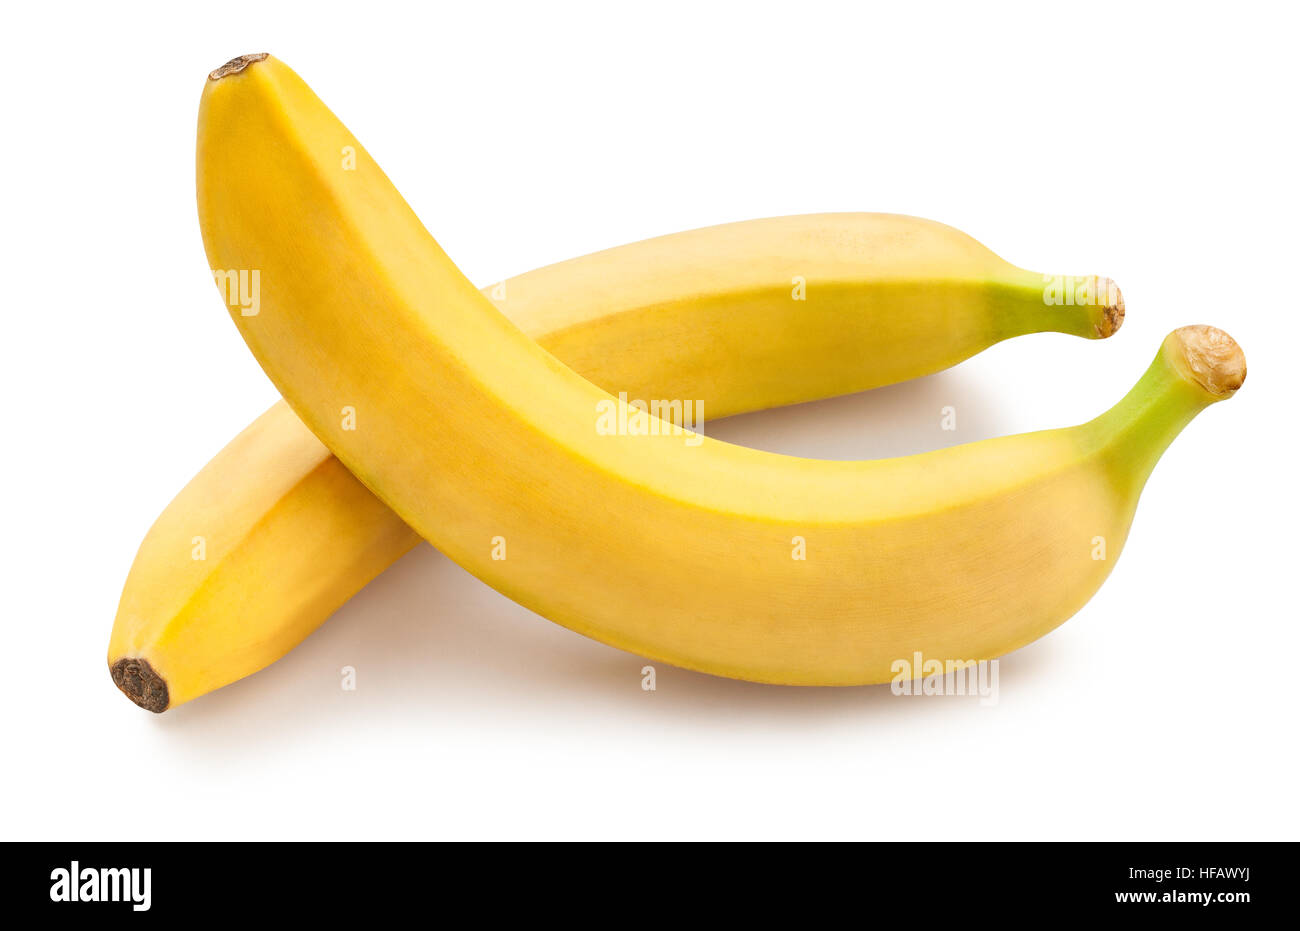 banana isolated Stock Photo